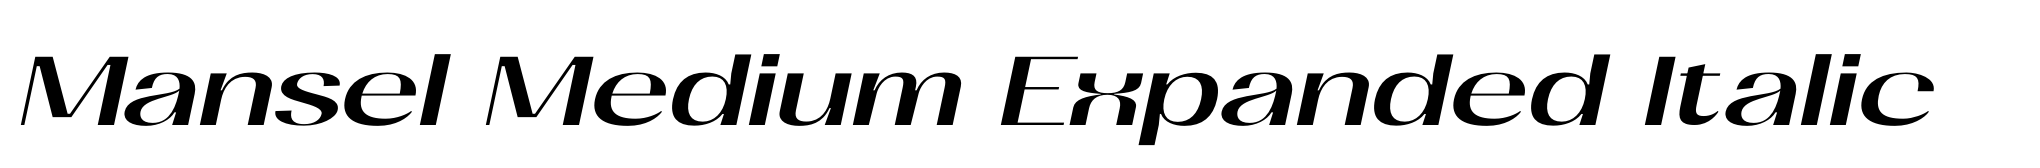 Mansel Medium Expanded Italic image